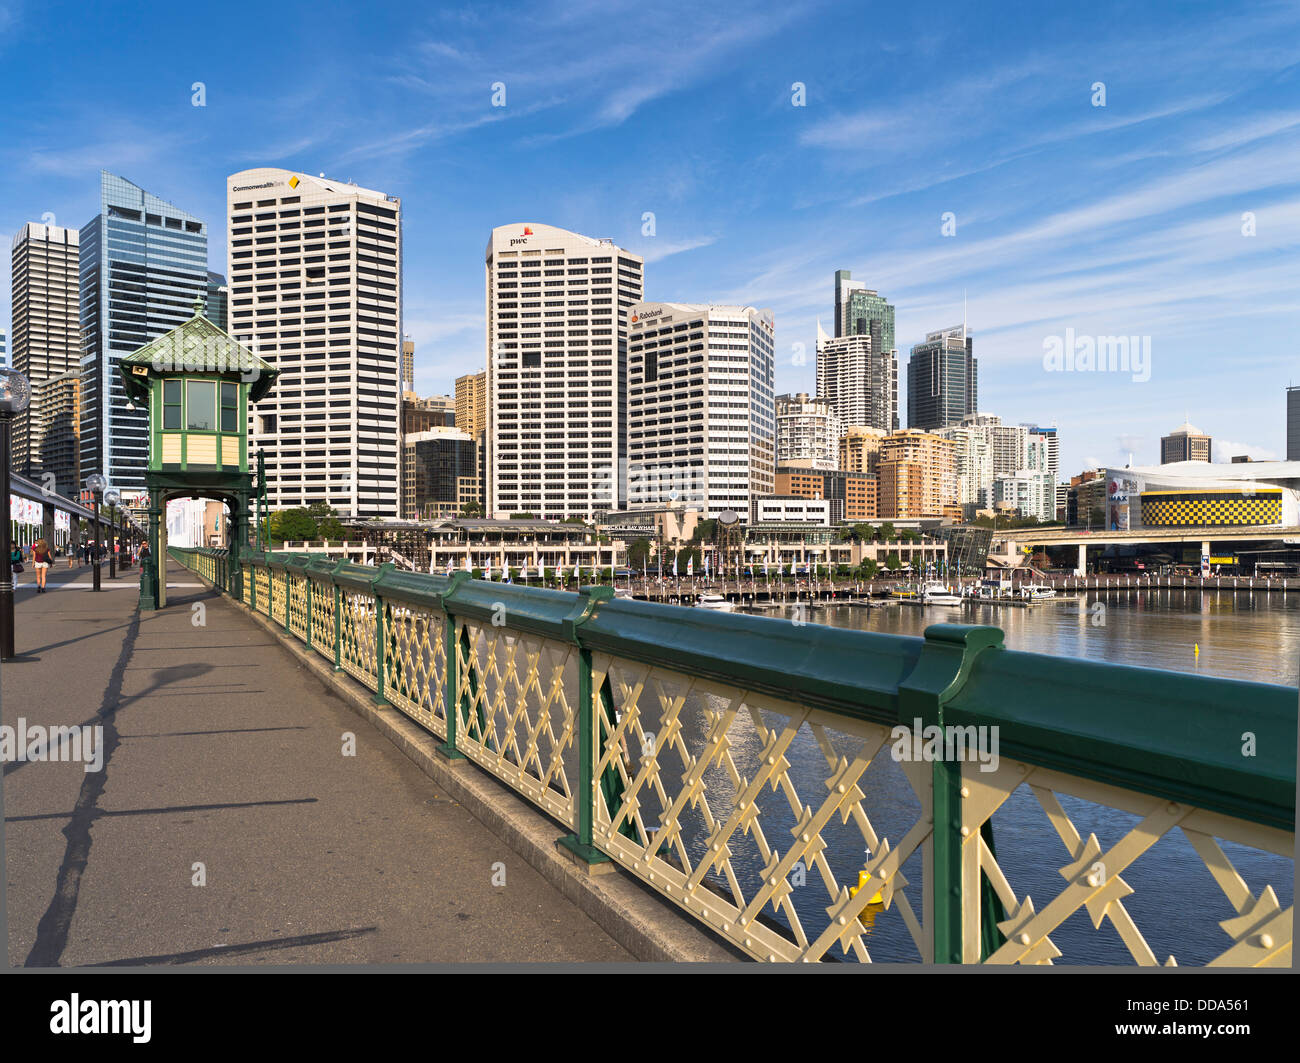 Hafen der Stadt Skyline von dh Darling Harbour SYDNEY Australien Pyrmont Bridge Wolkenkratzer Stockfoto